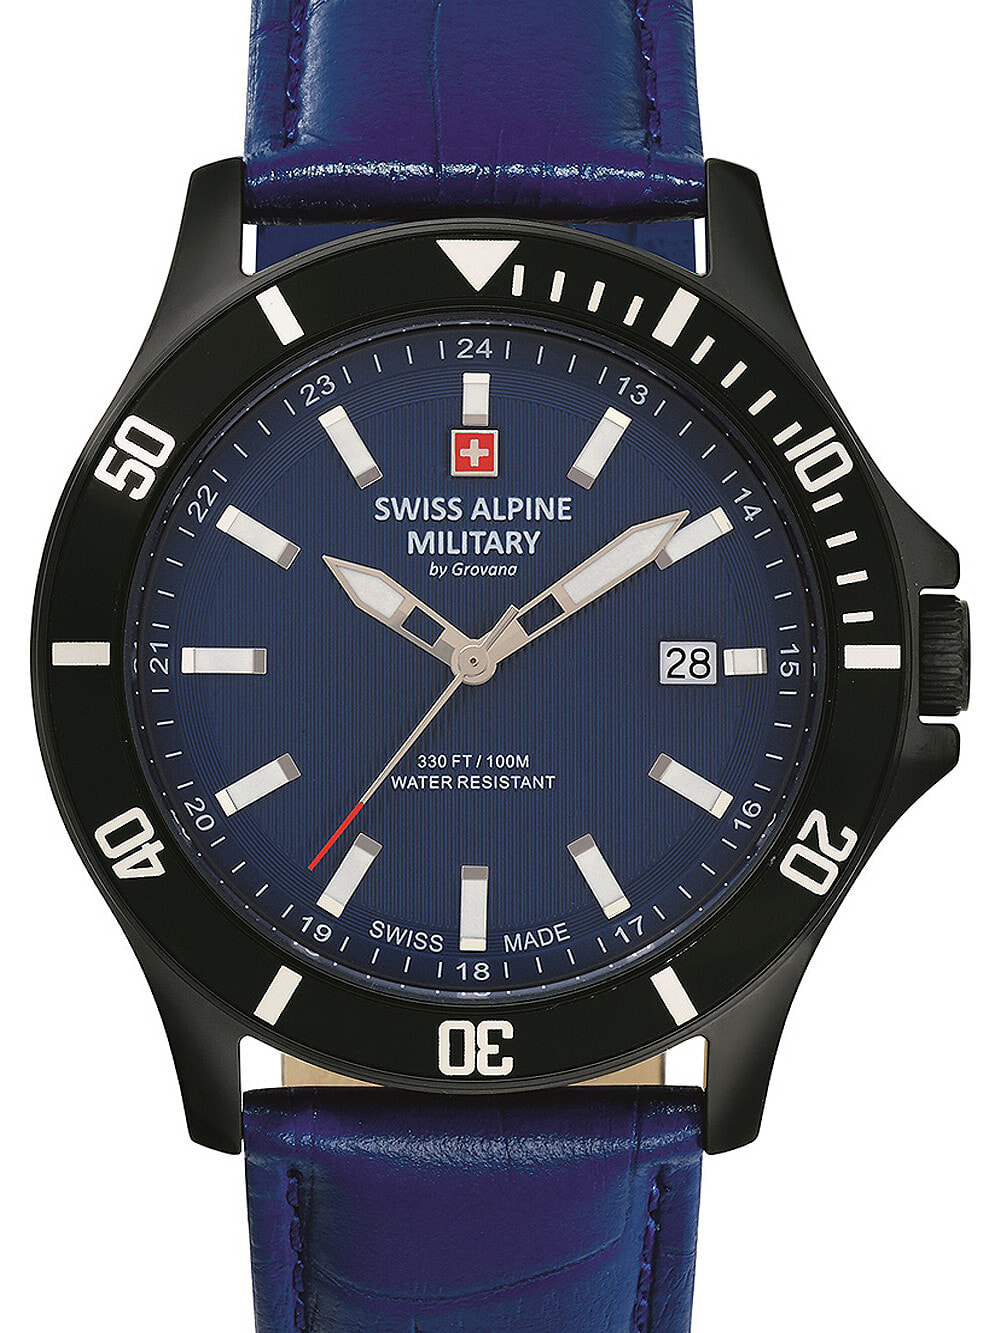 Мужские наручные часы с синим кожаным ремешком Swiss Alpine Military 7022.1575 mens 42mm 10ATM